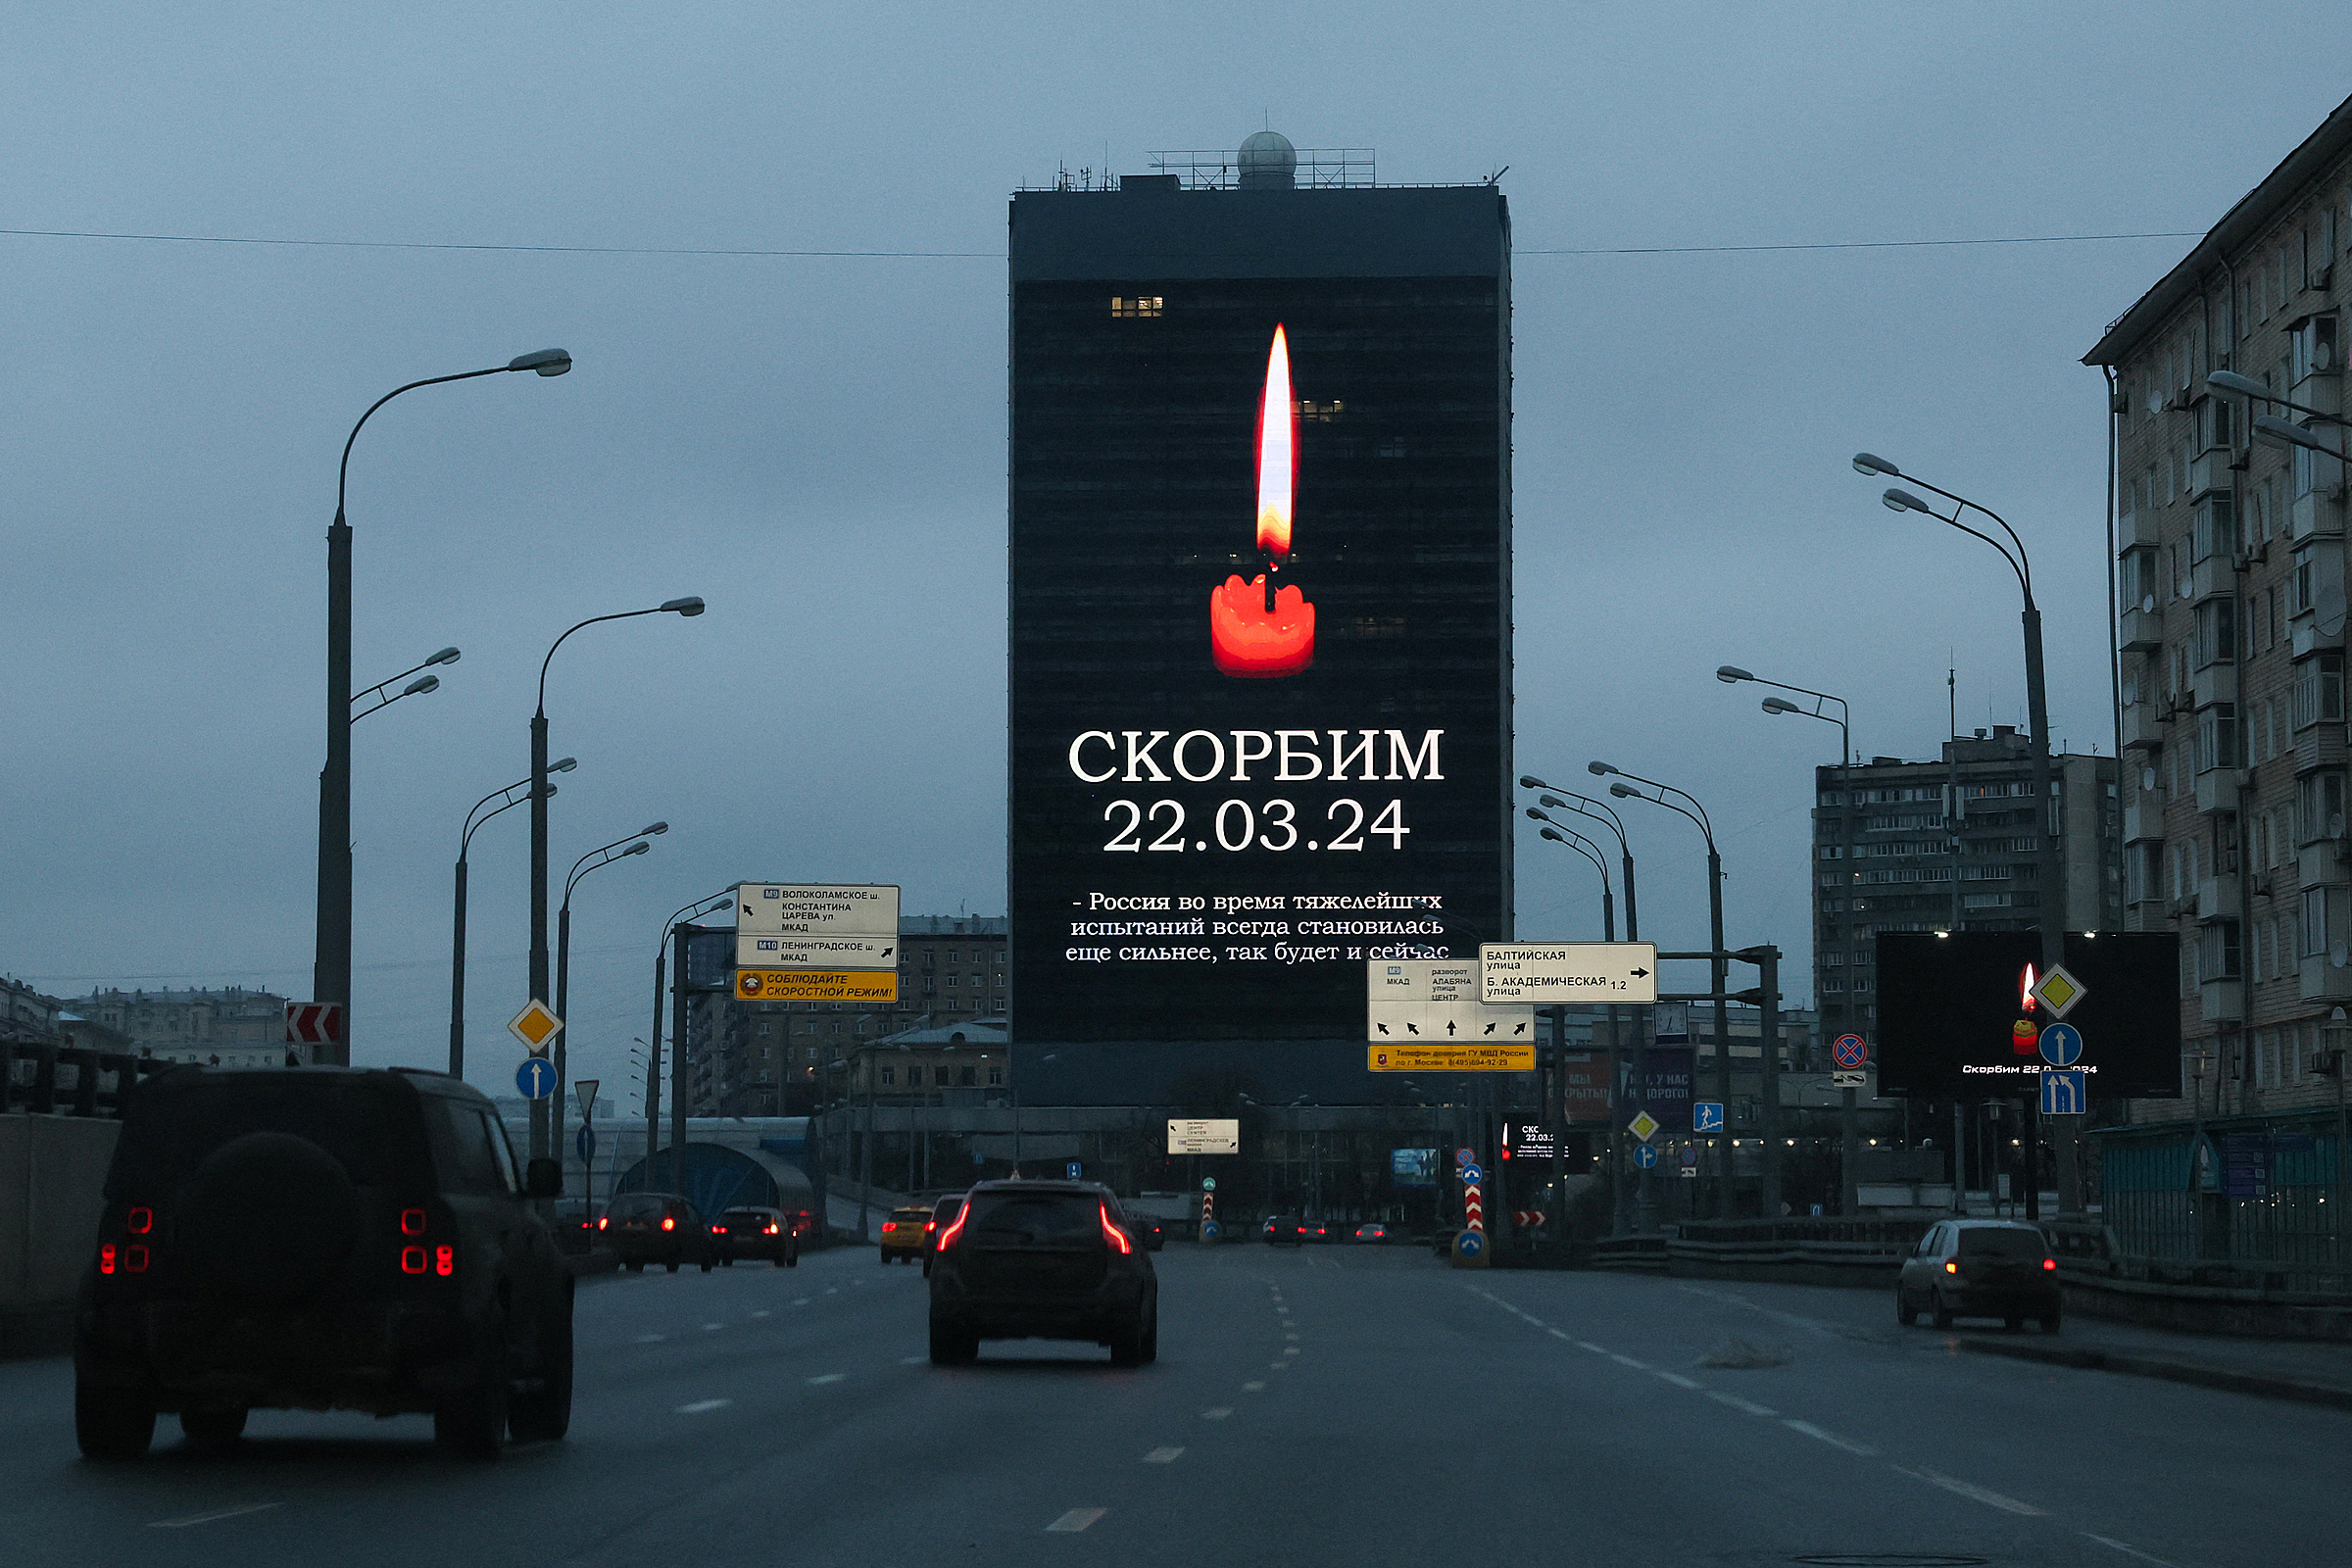 Màn hình hiển thị ngọn nến thắp sáng, tưởng nhớ các nạn nhân thiệt mạng trong vụ khủng bố, trên đường phố Moskva, ngày 23/3. Ảnh: AFP